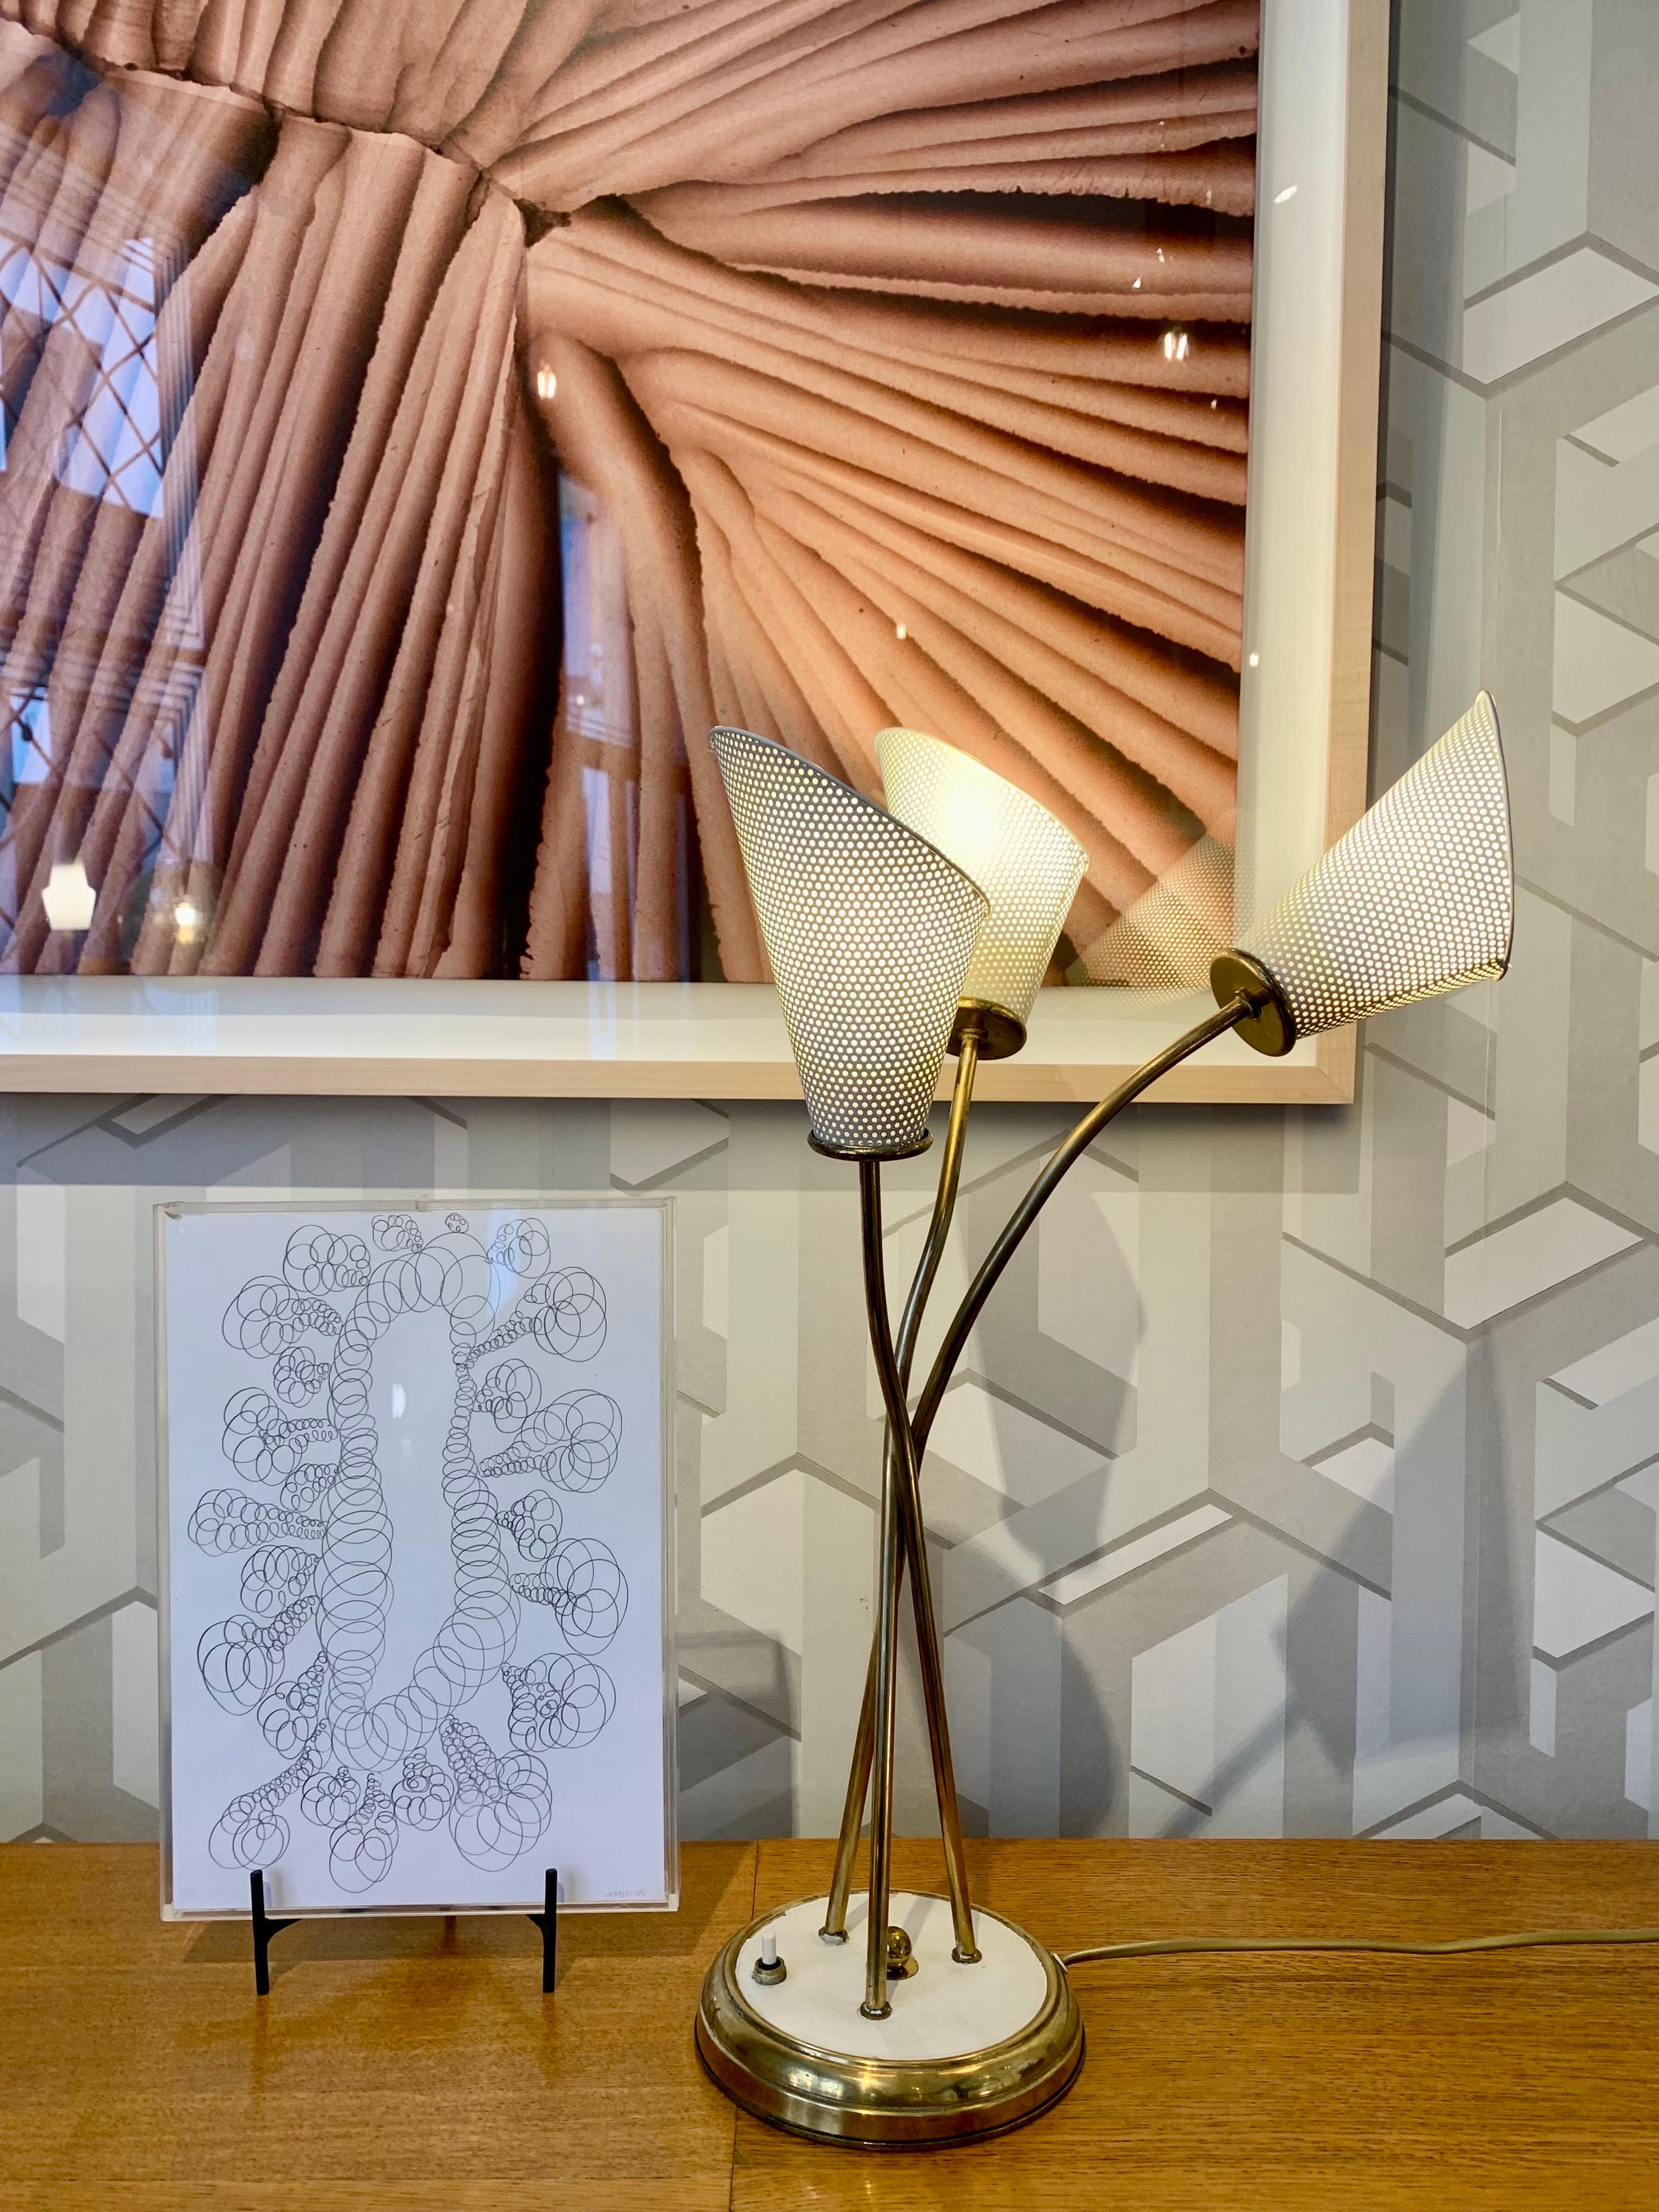 Tischleuchte aus den 50er Jahren, entworfen von Mathieu Mategot, aus lackiertem Metall und vergoldetem Messing, drei Lampenschirme aus perforiertem Metall und in cremefarbener Farbe, sie bewahrt alle ihre ursprünglichen Elemente.